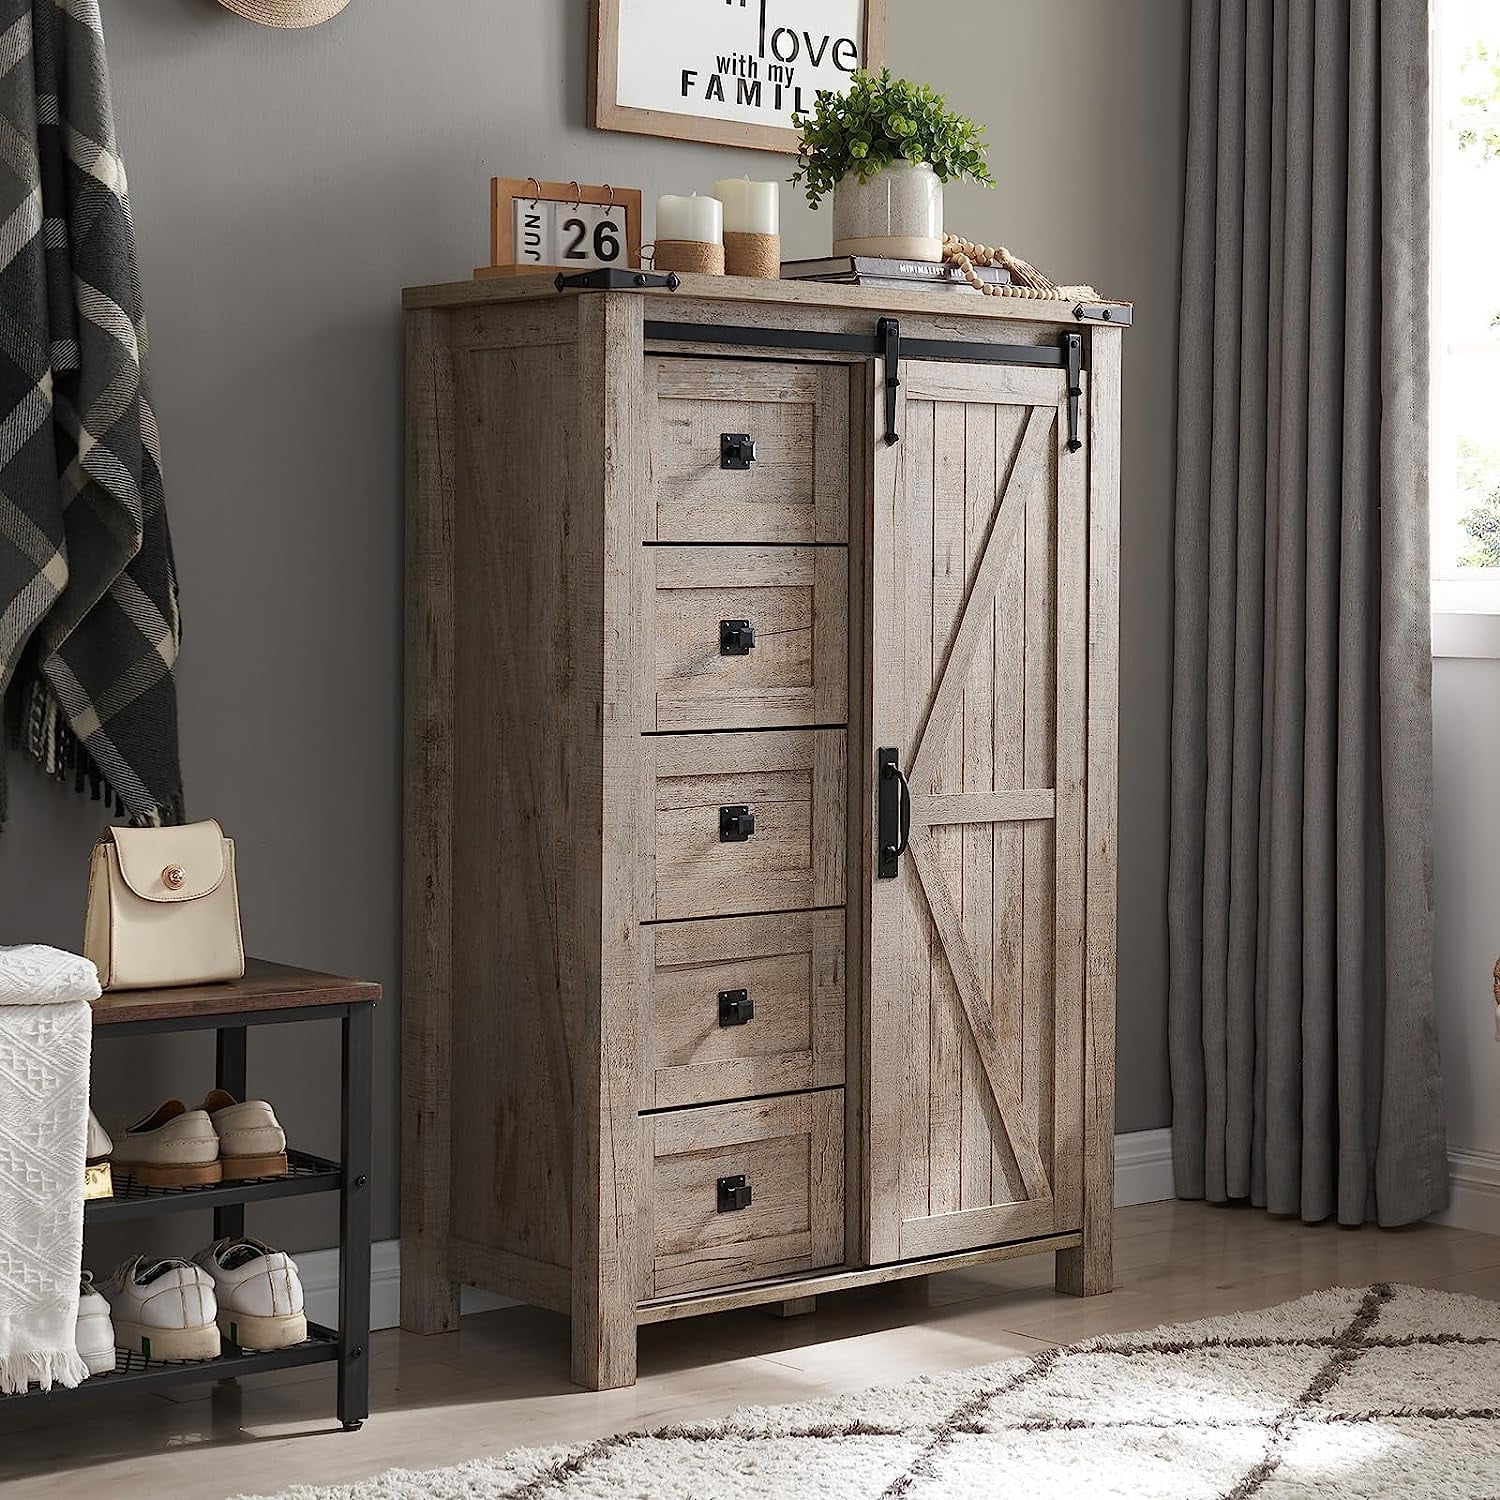 OKD Modern Farmhouse 5-Drawer Dresser with Barn Door, Adjustable Storage Cabinet for Bedroom Living Room, Light Rustic Oak